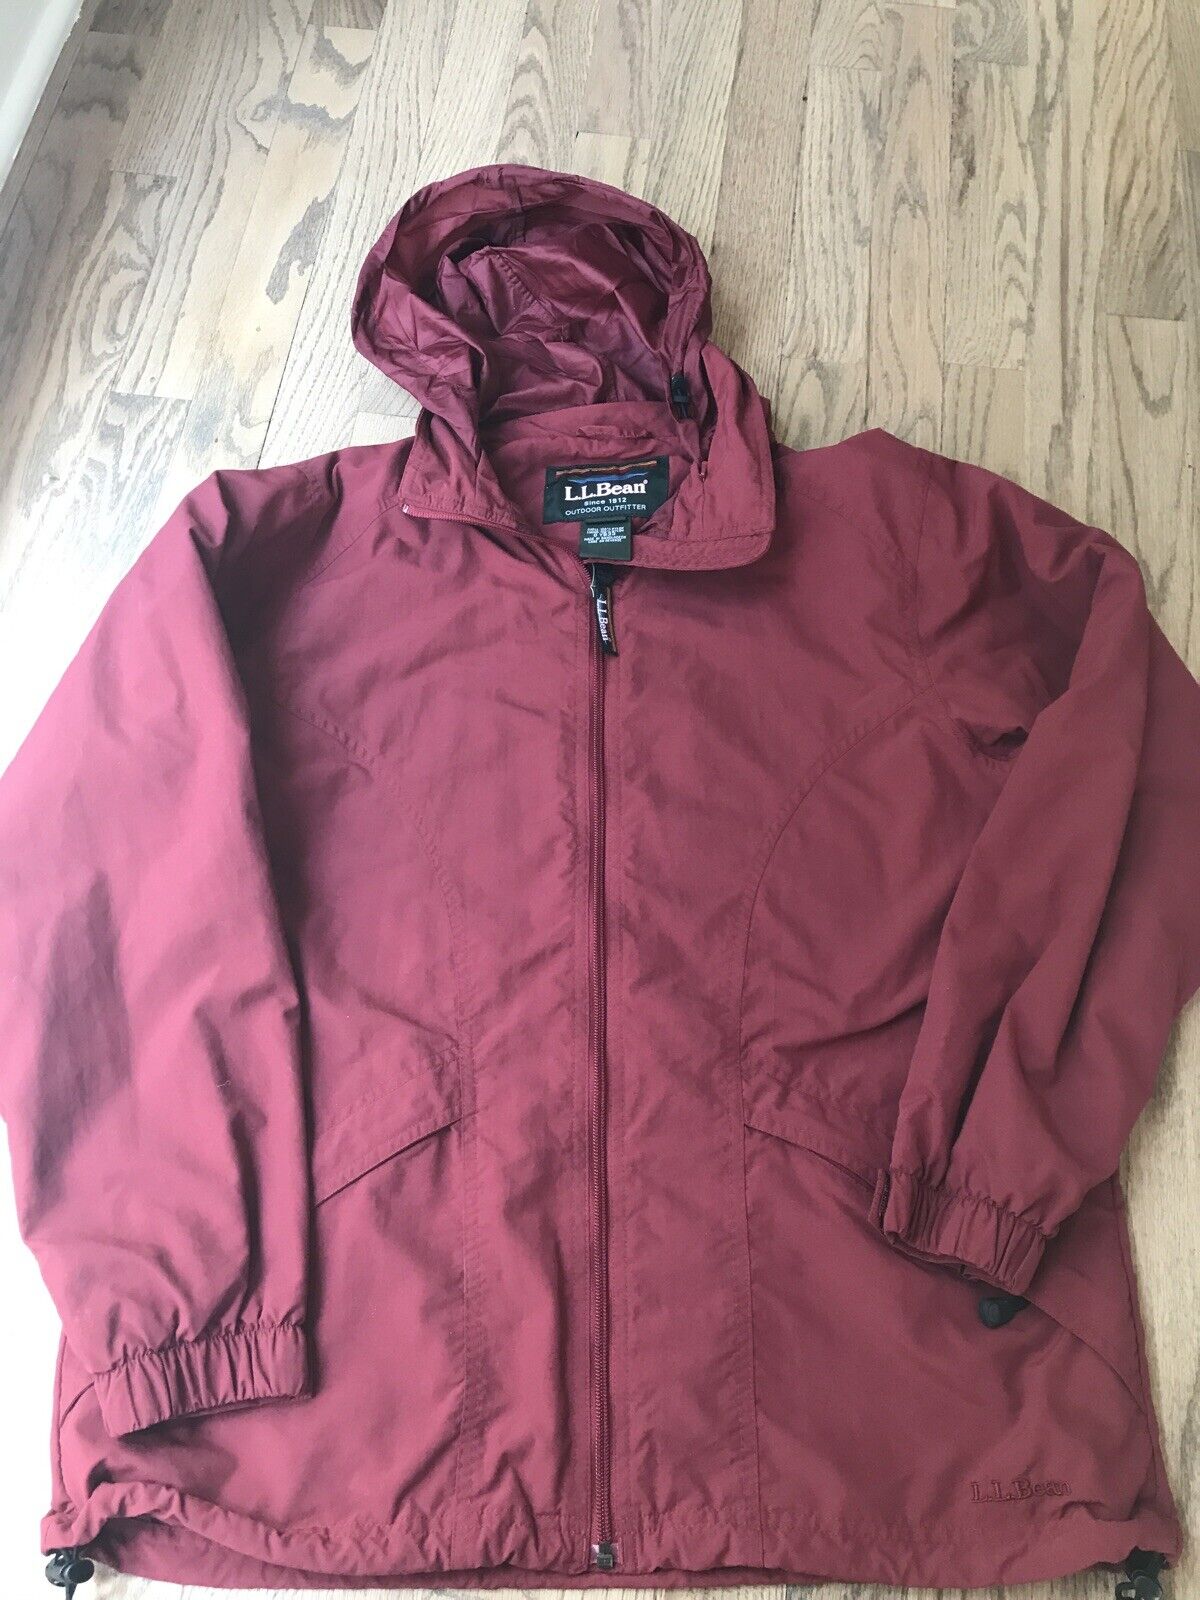 Ll Bean Womens Parka Jacket 71341 Medium Red | eBay